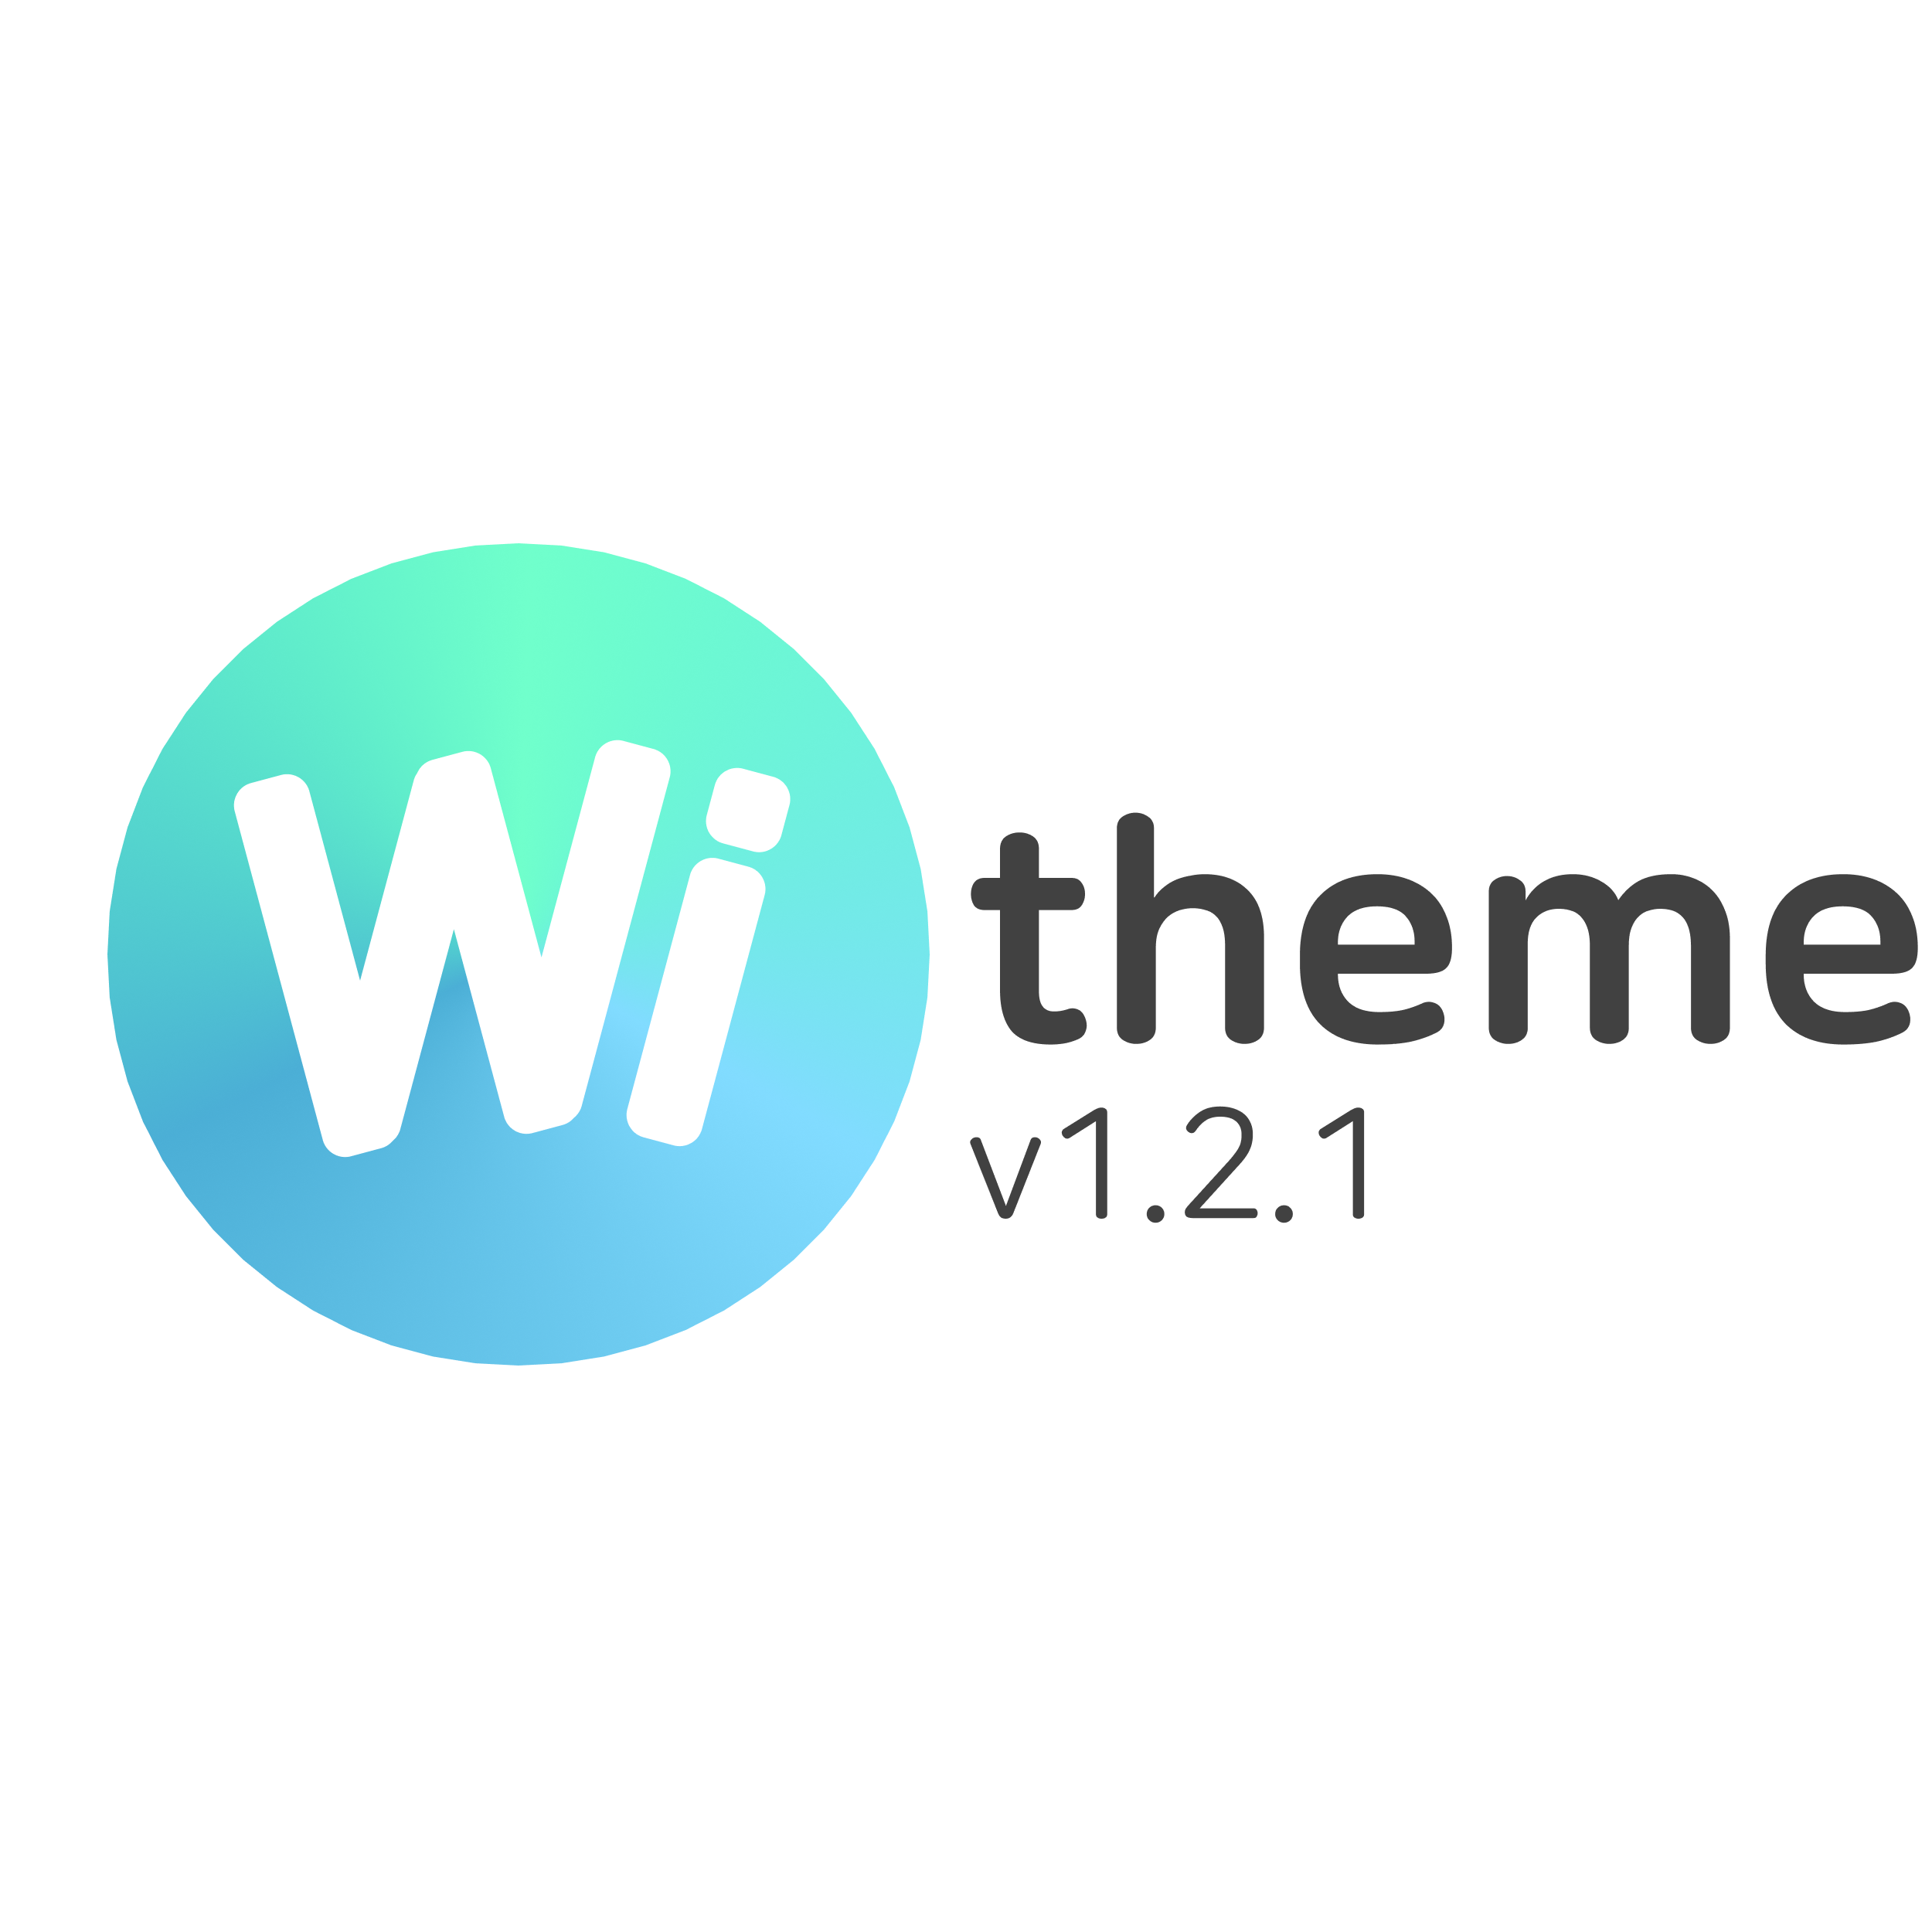 Wi theme 1.2.1 업데이트 사항 15